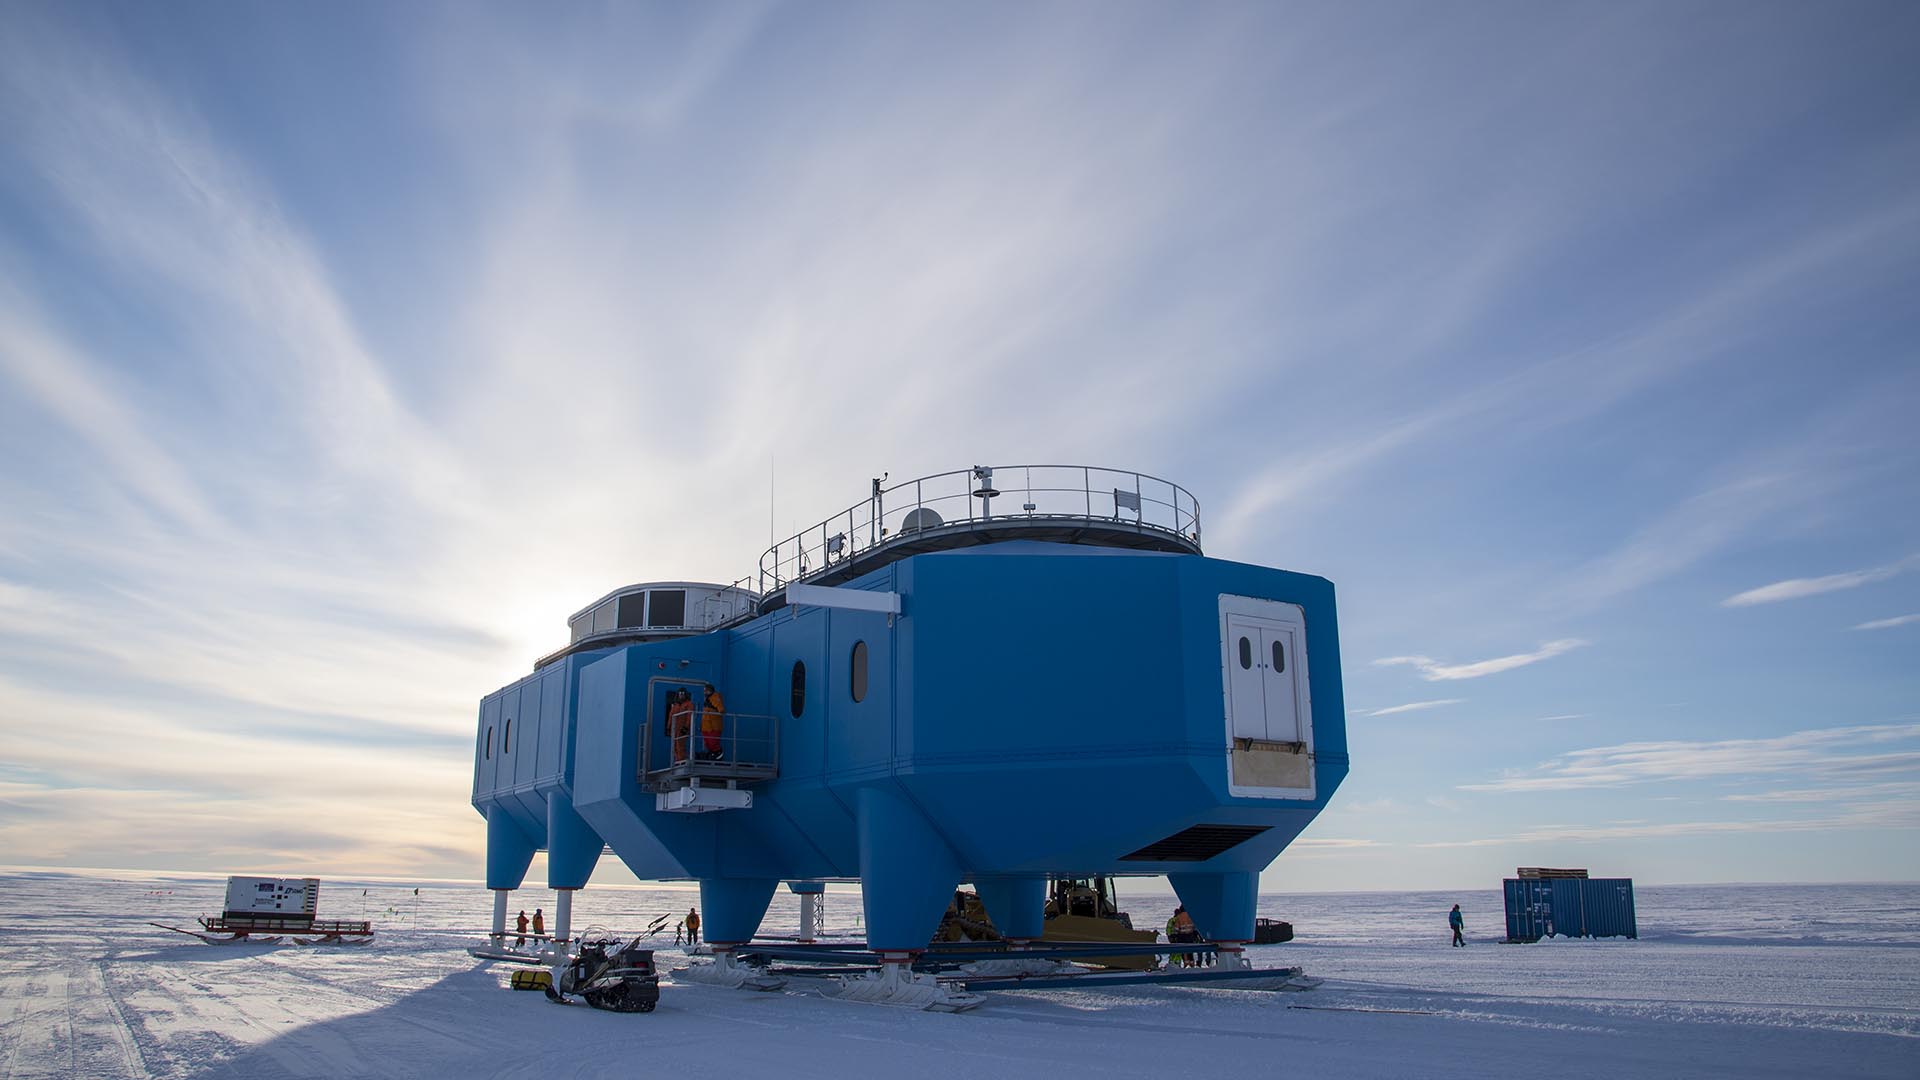 Арктический и антарктический научно исследовательский. Исследовательская станция Halley vi. Мирный (антарктическая станция). Антарктическая научная станция Восток. Полярная станция Мирный в Антарктиде.